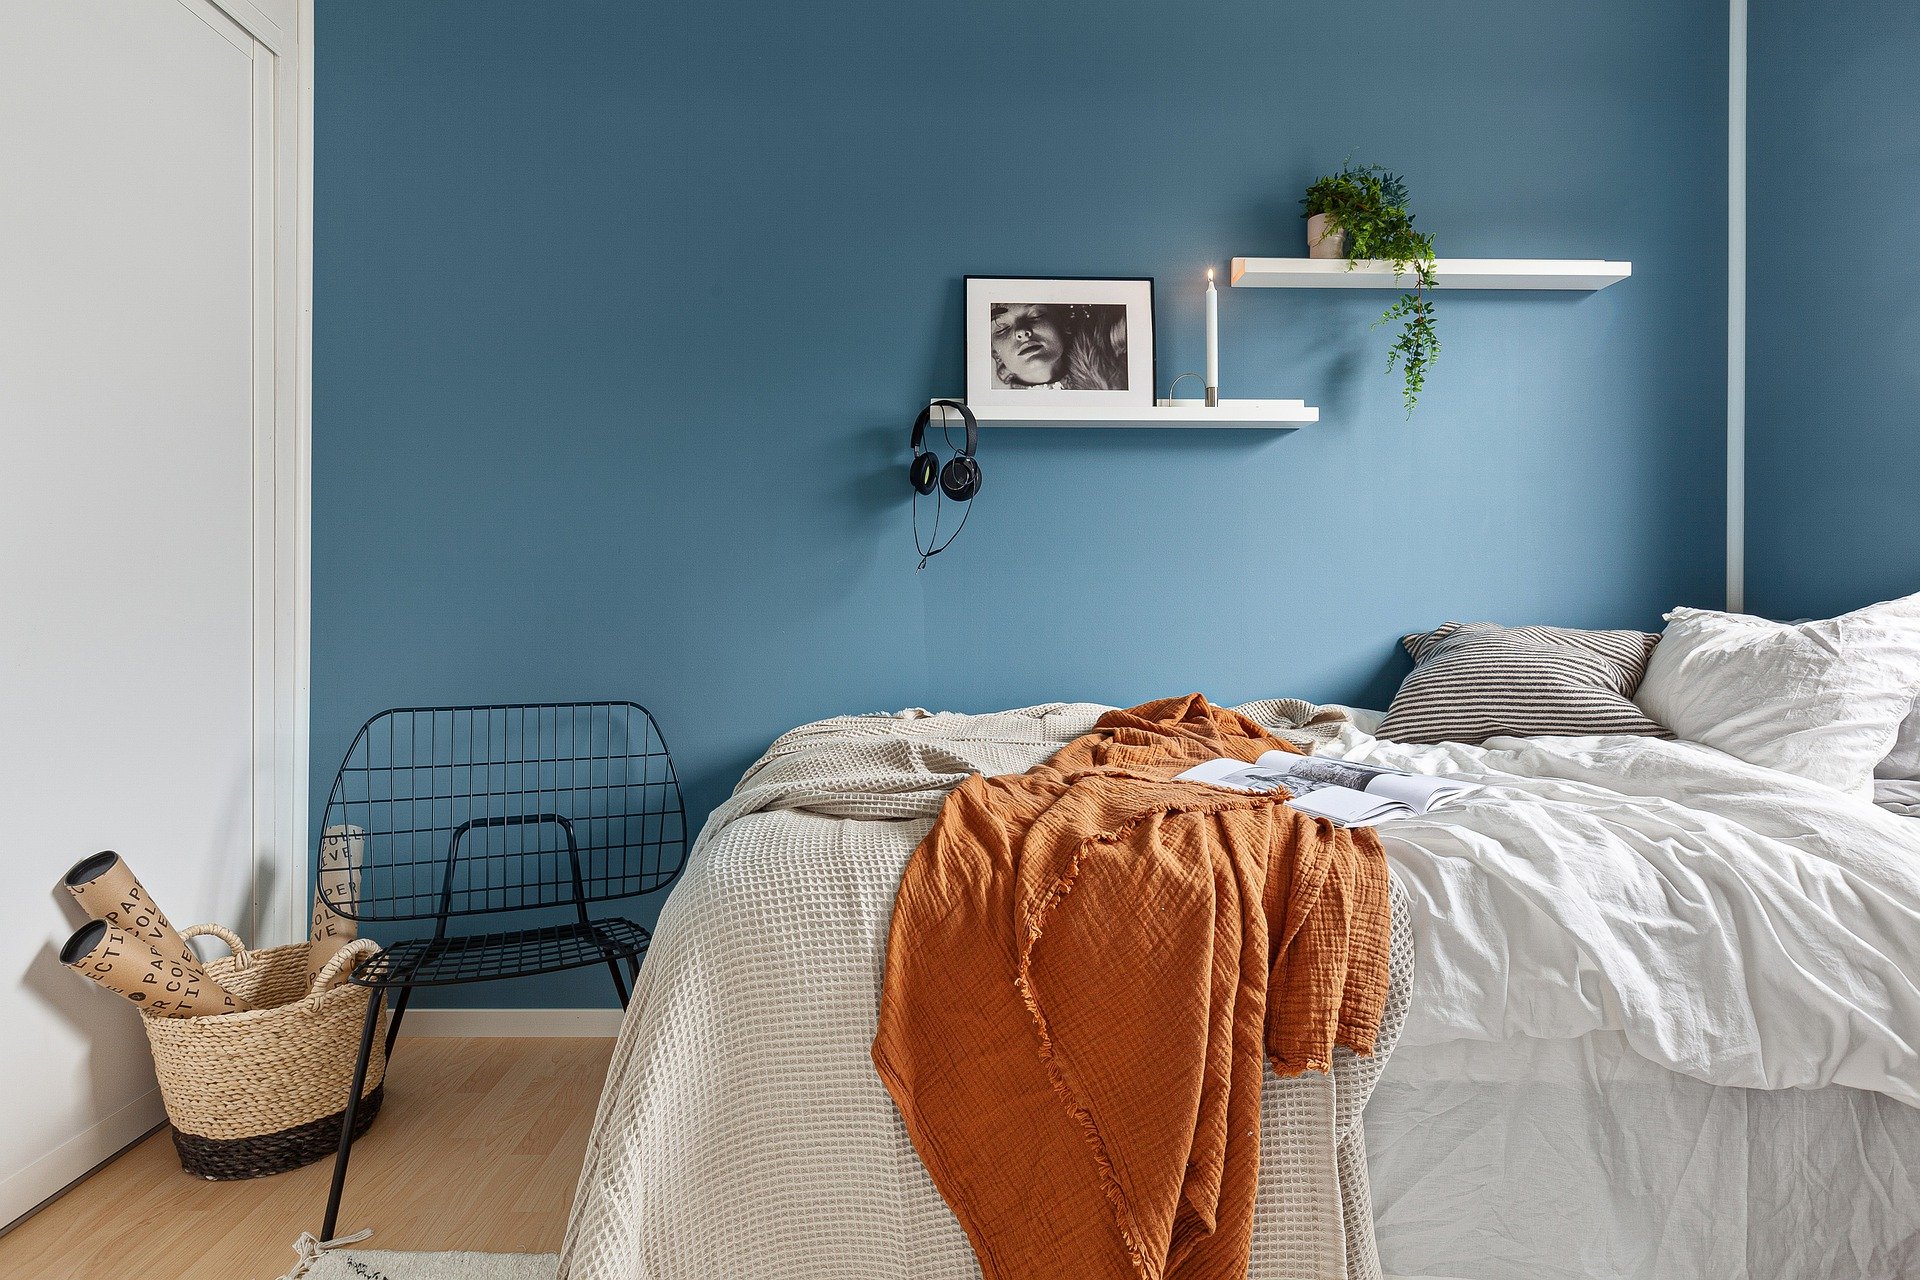 Peinture : Quelle couleur idéale pour la chambre à coucher ?